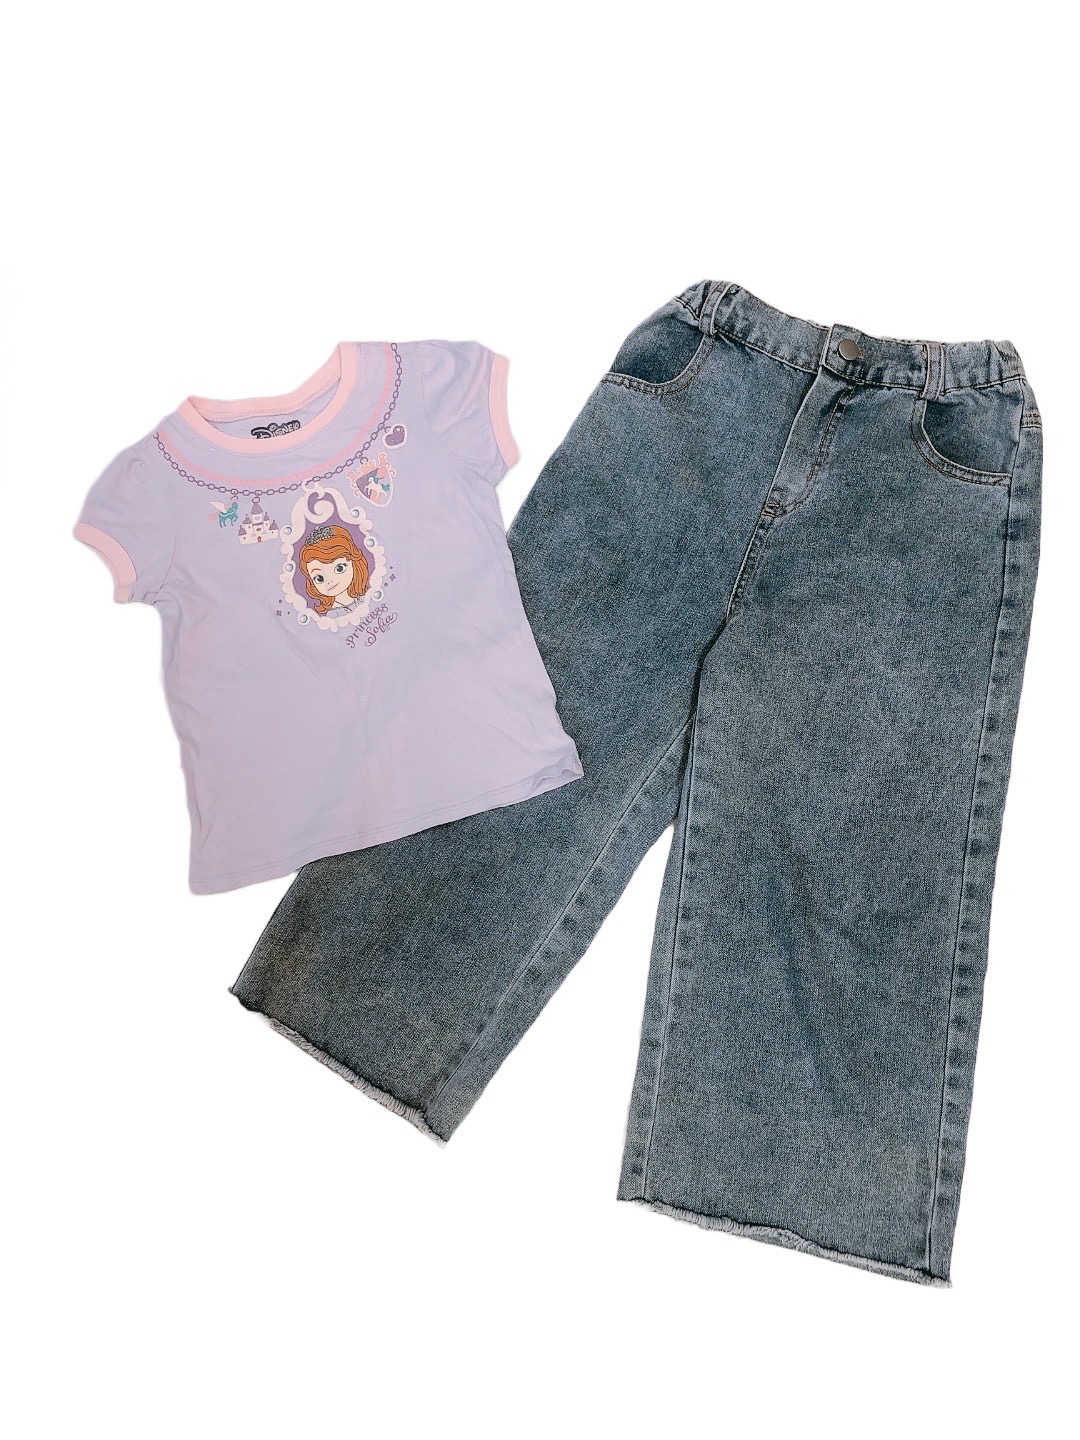 蘇菲亞紫色短袖上衣&寬版女童牛仔褲(110)
NT$139